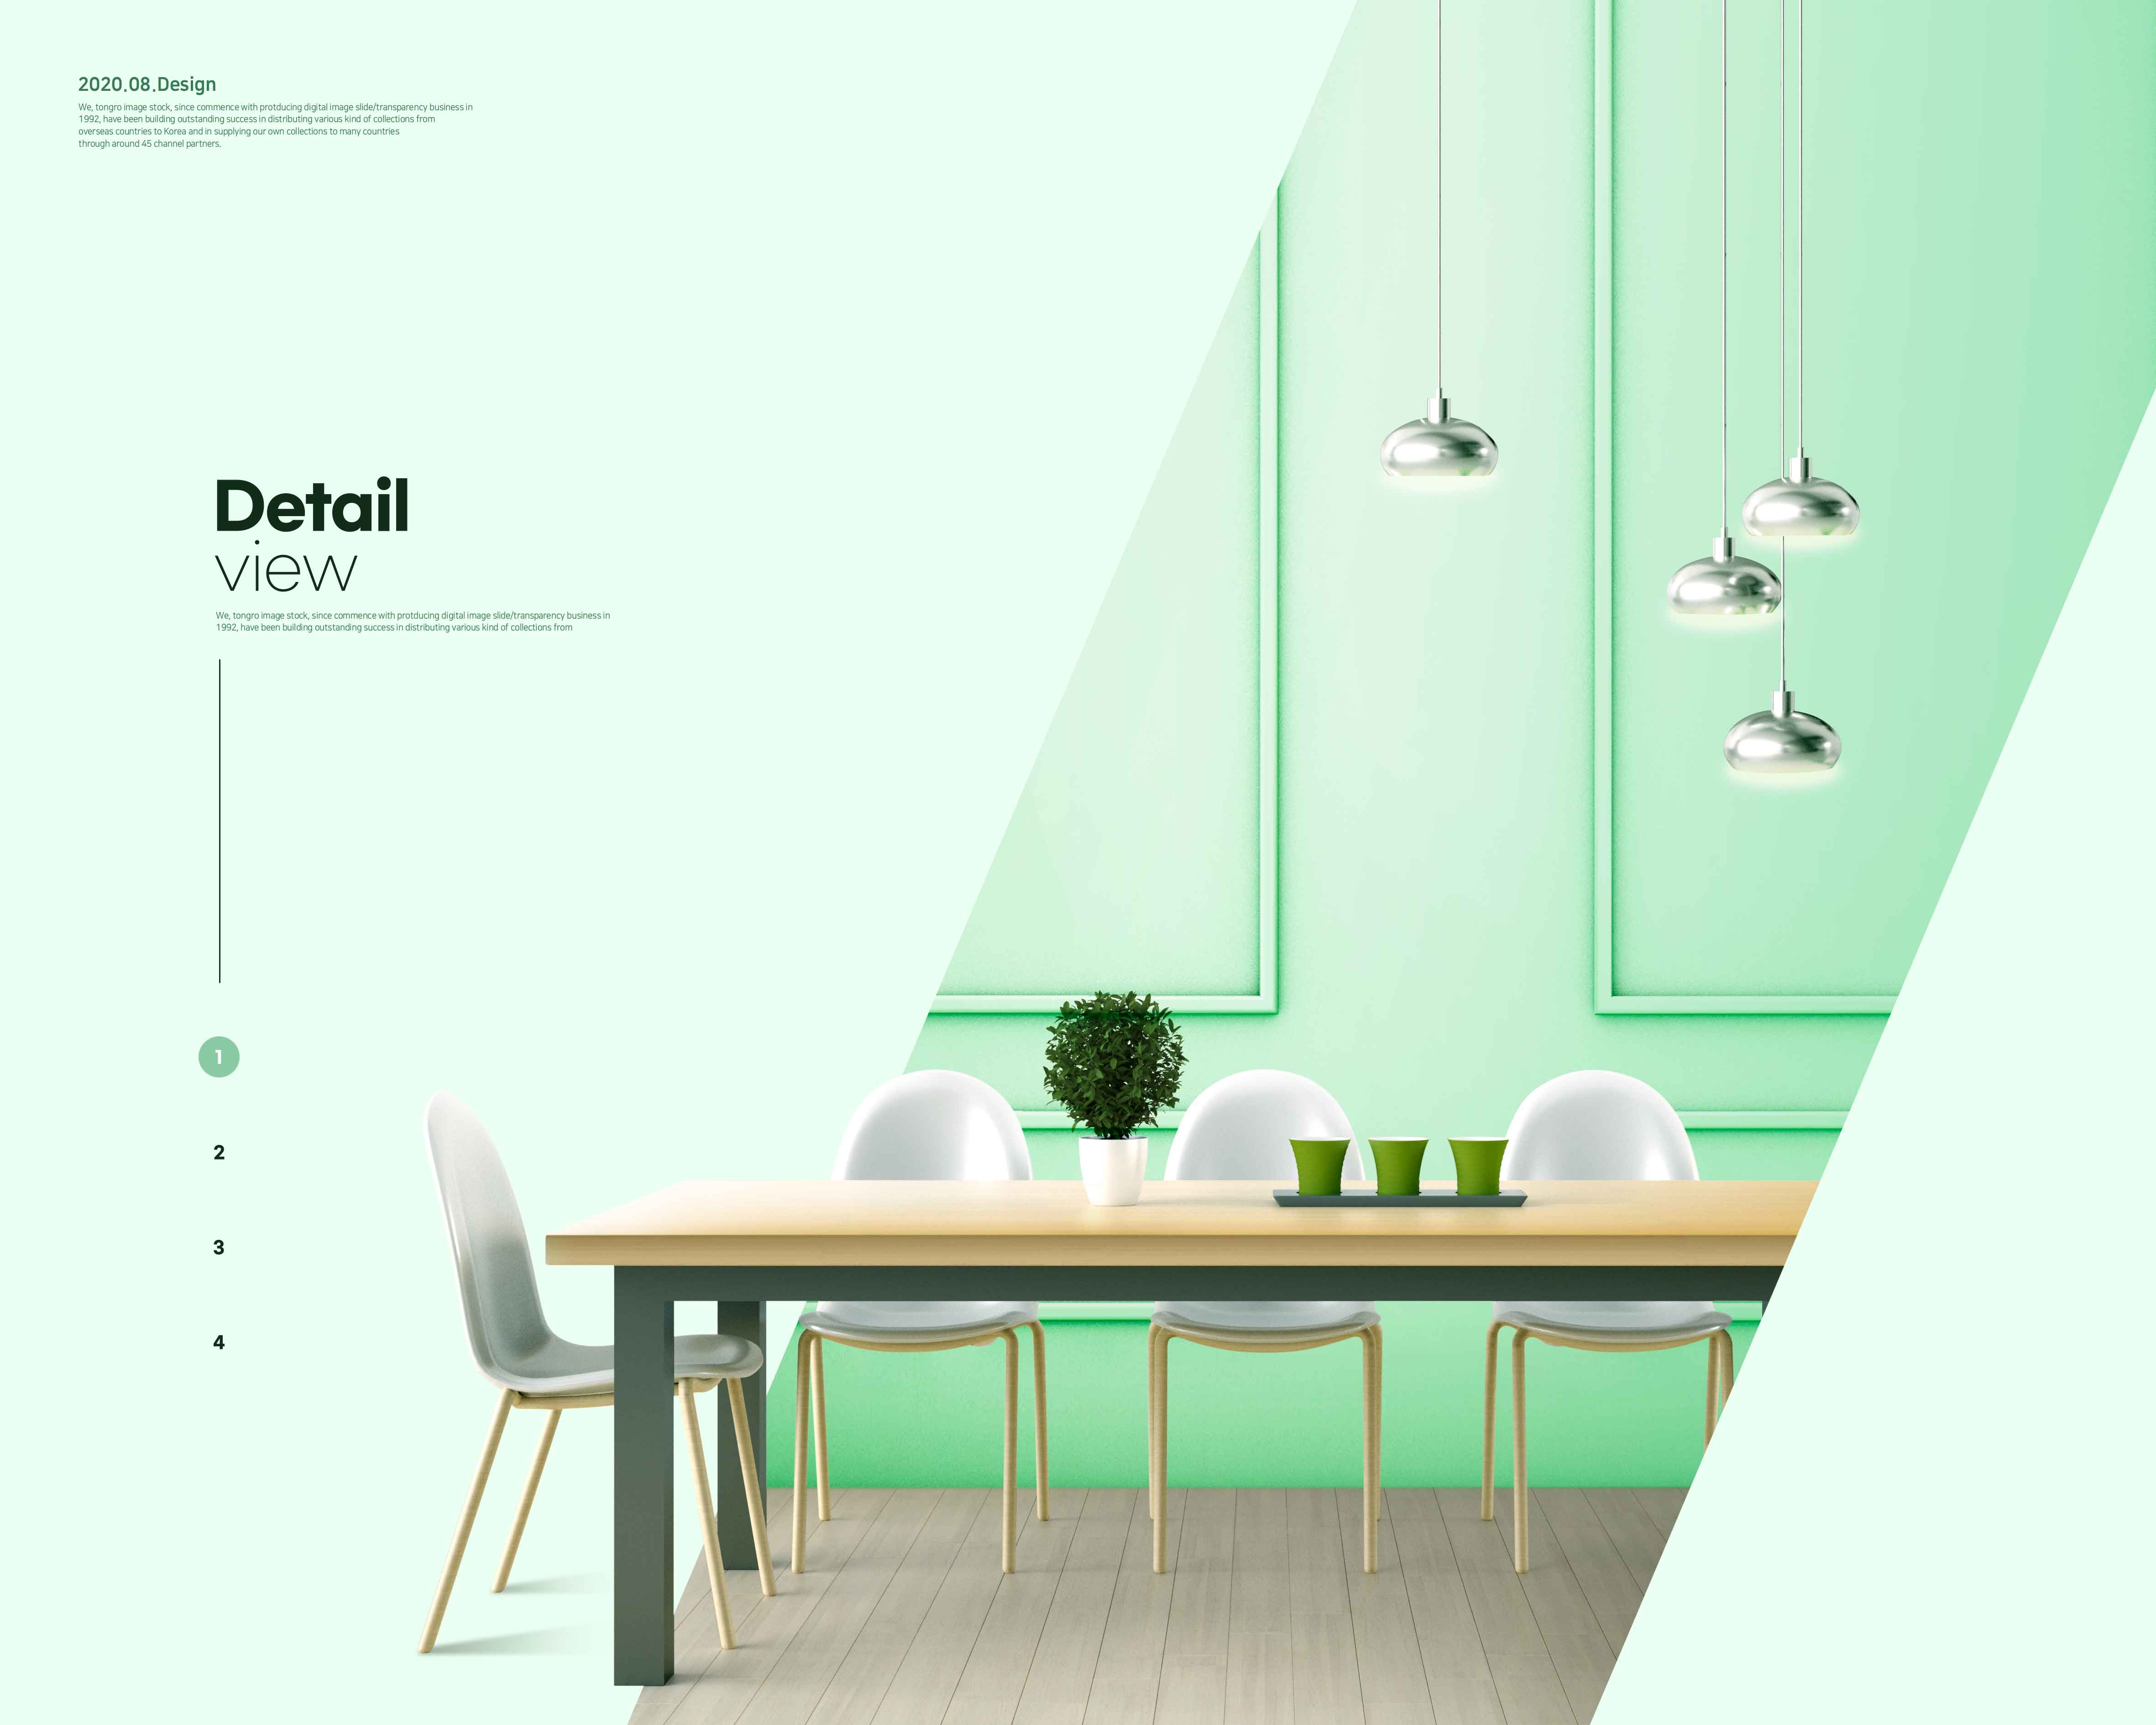 精品绿色主题现代室内家具装饰设计海报psd源文件,编号:82630360